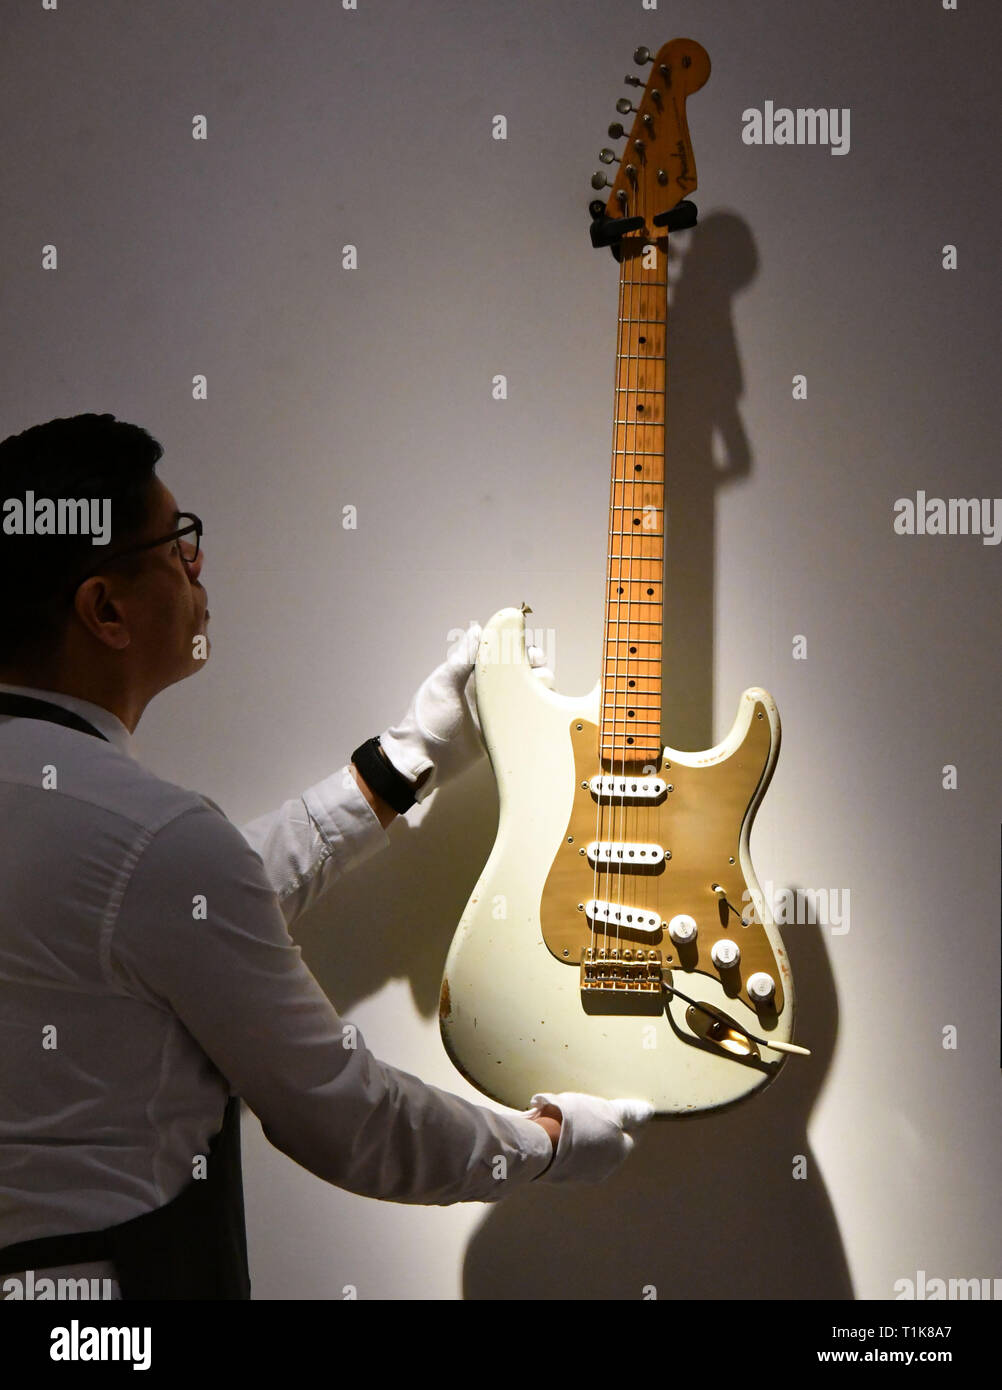 Weiße Fender Stratocaster Seriennummer 0001 Stockfotos & Weiße ...